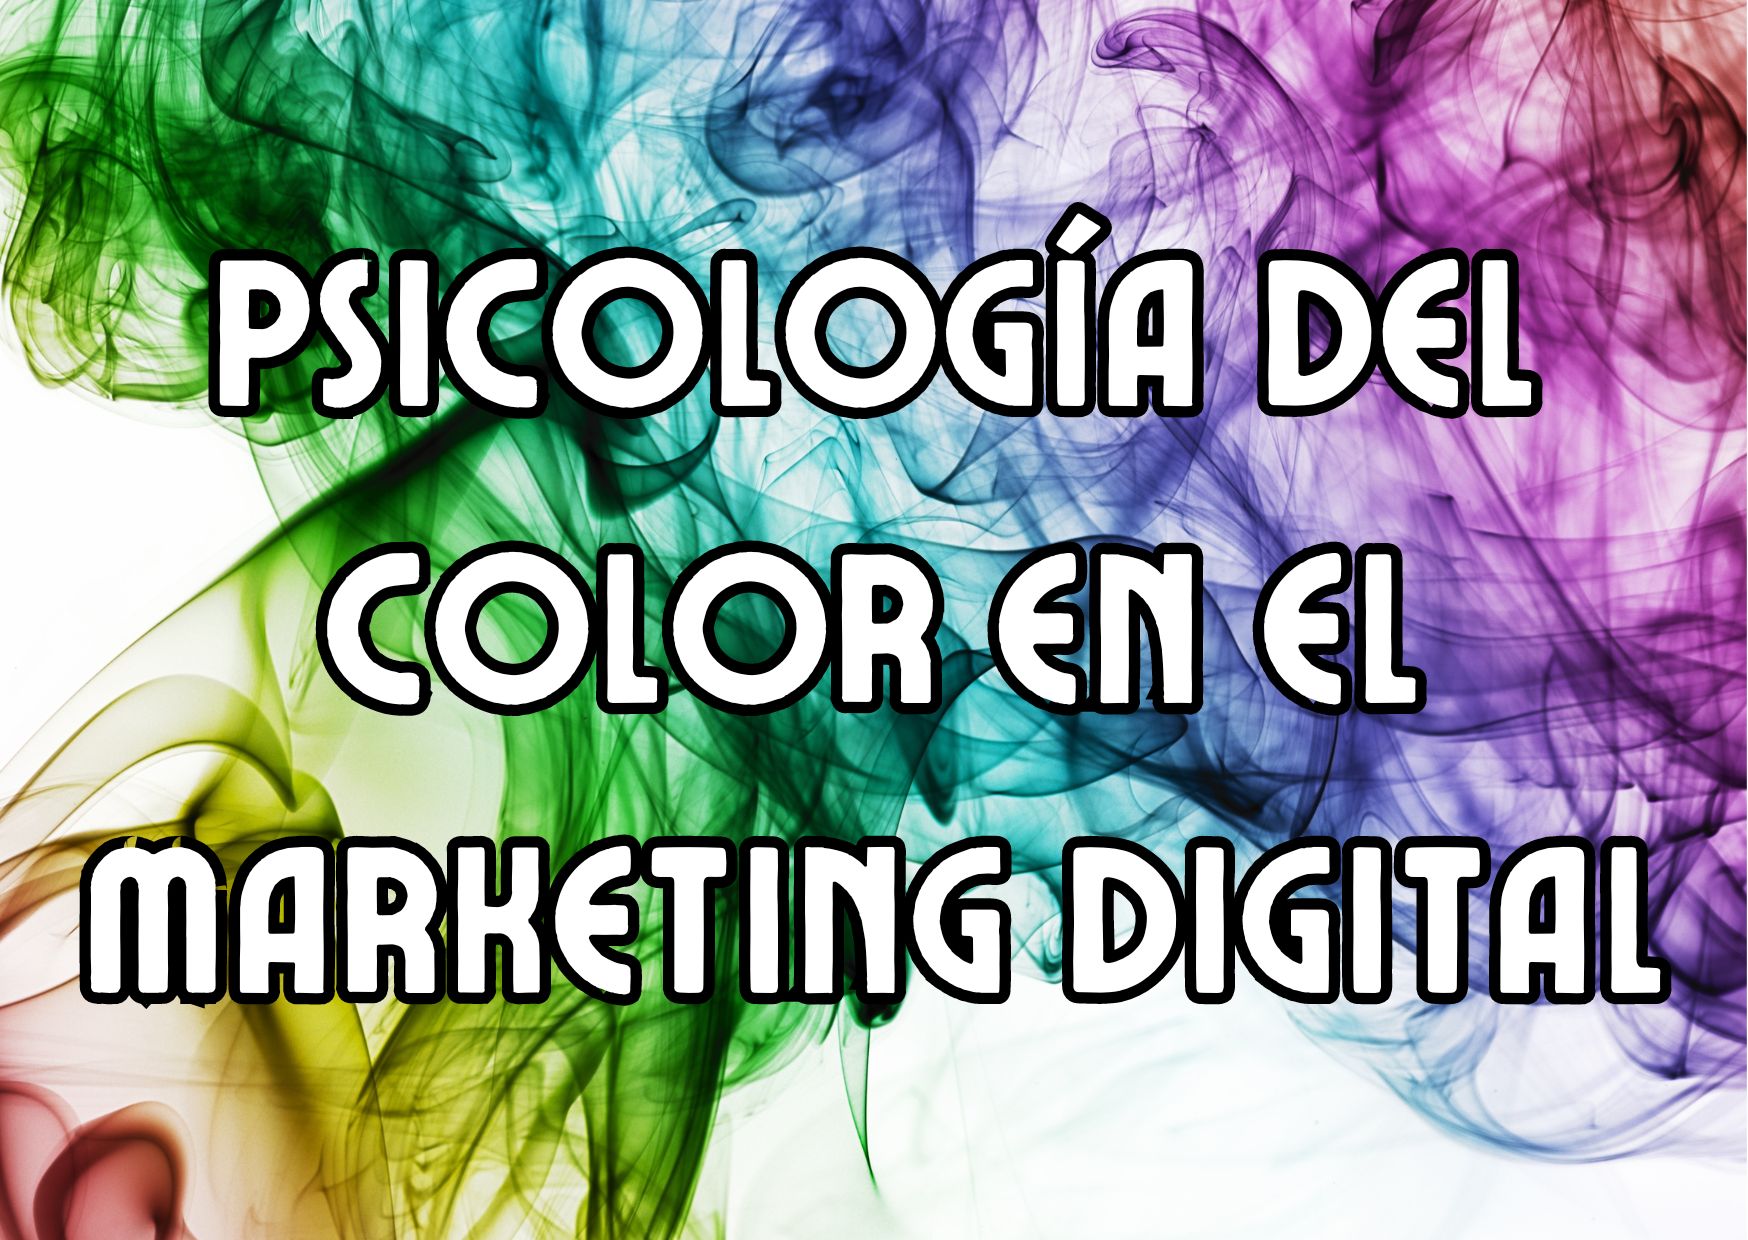 Psicología del color en el marketing digital